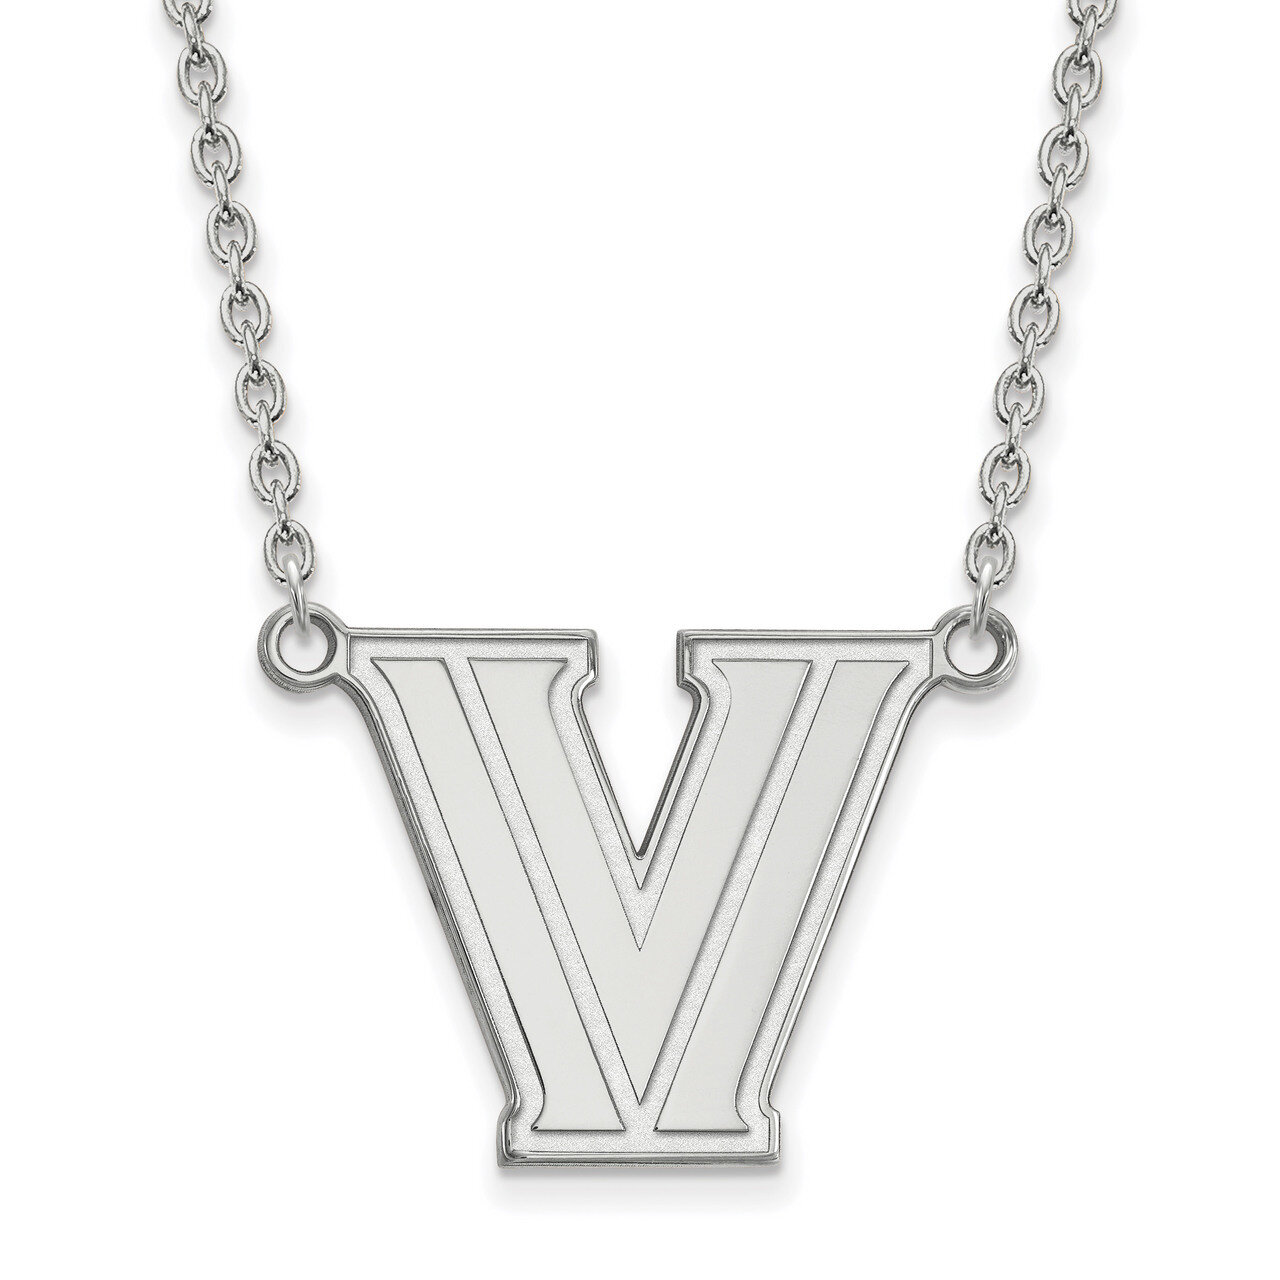 Villanova University Large Pendant with Necklace Sterling Silver SS009VIL-18